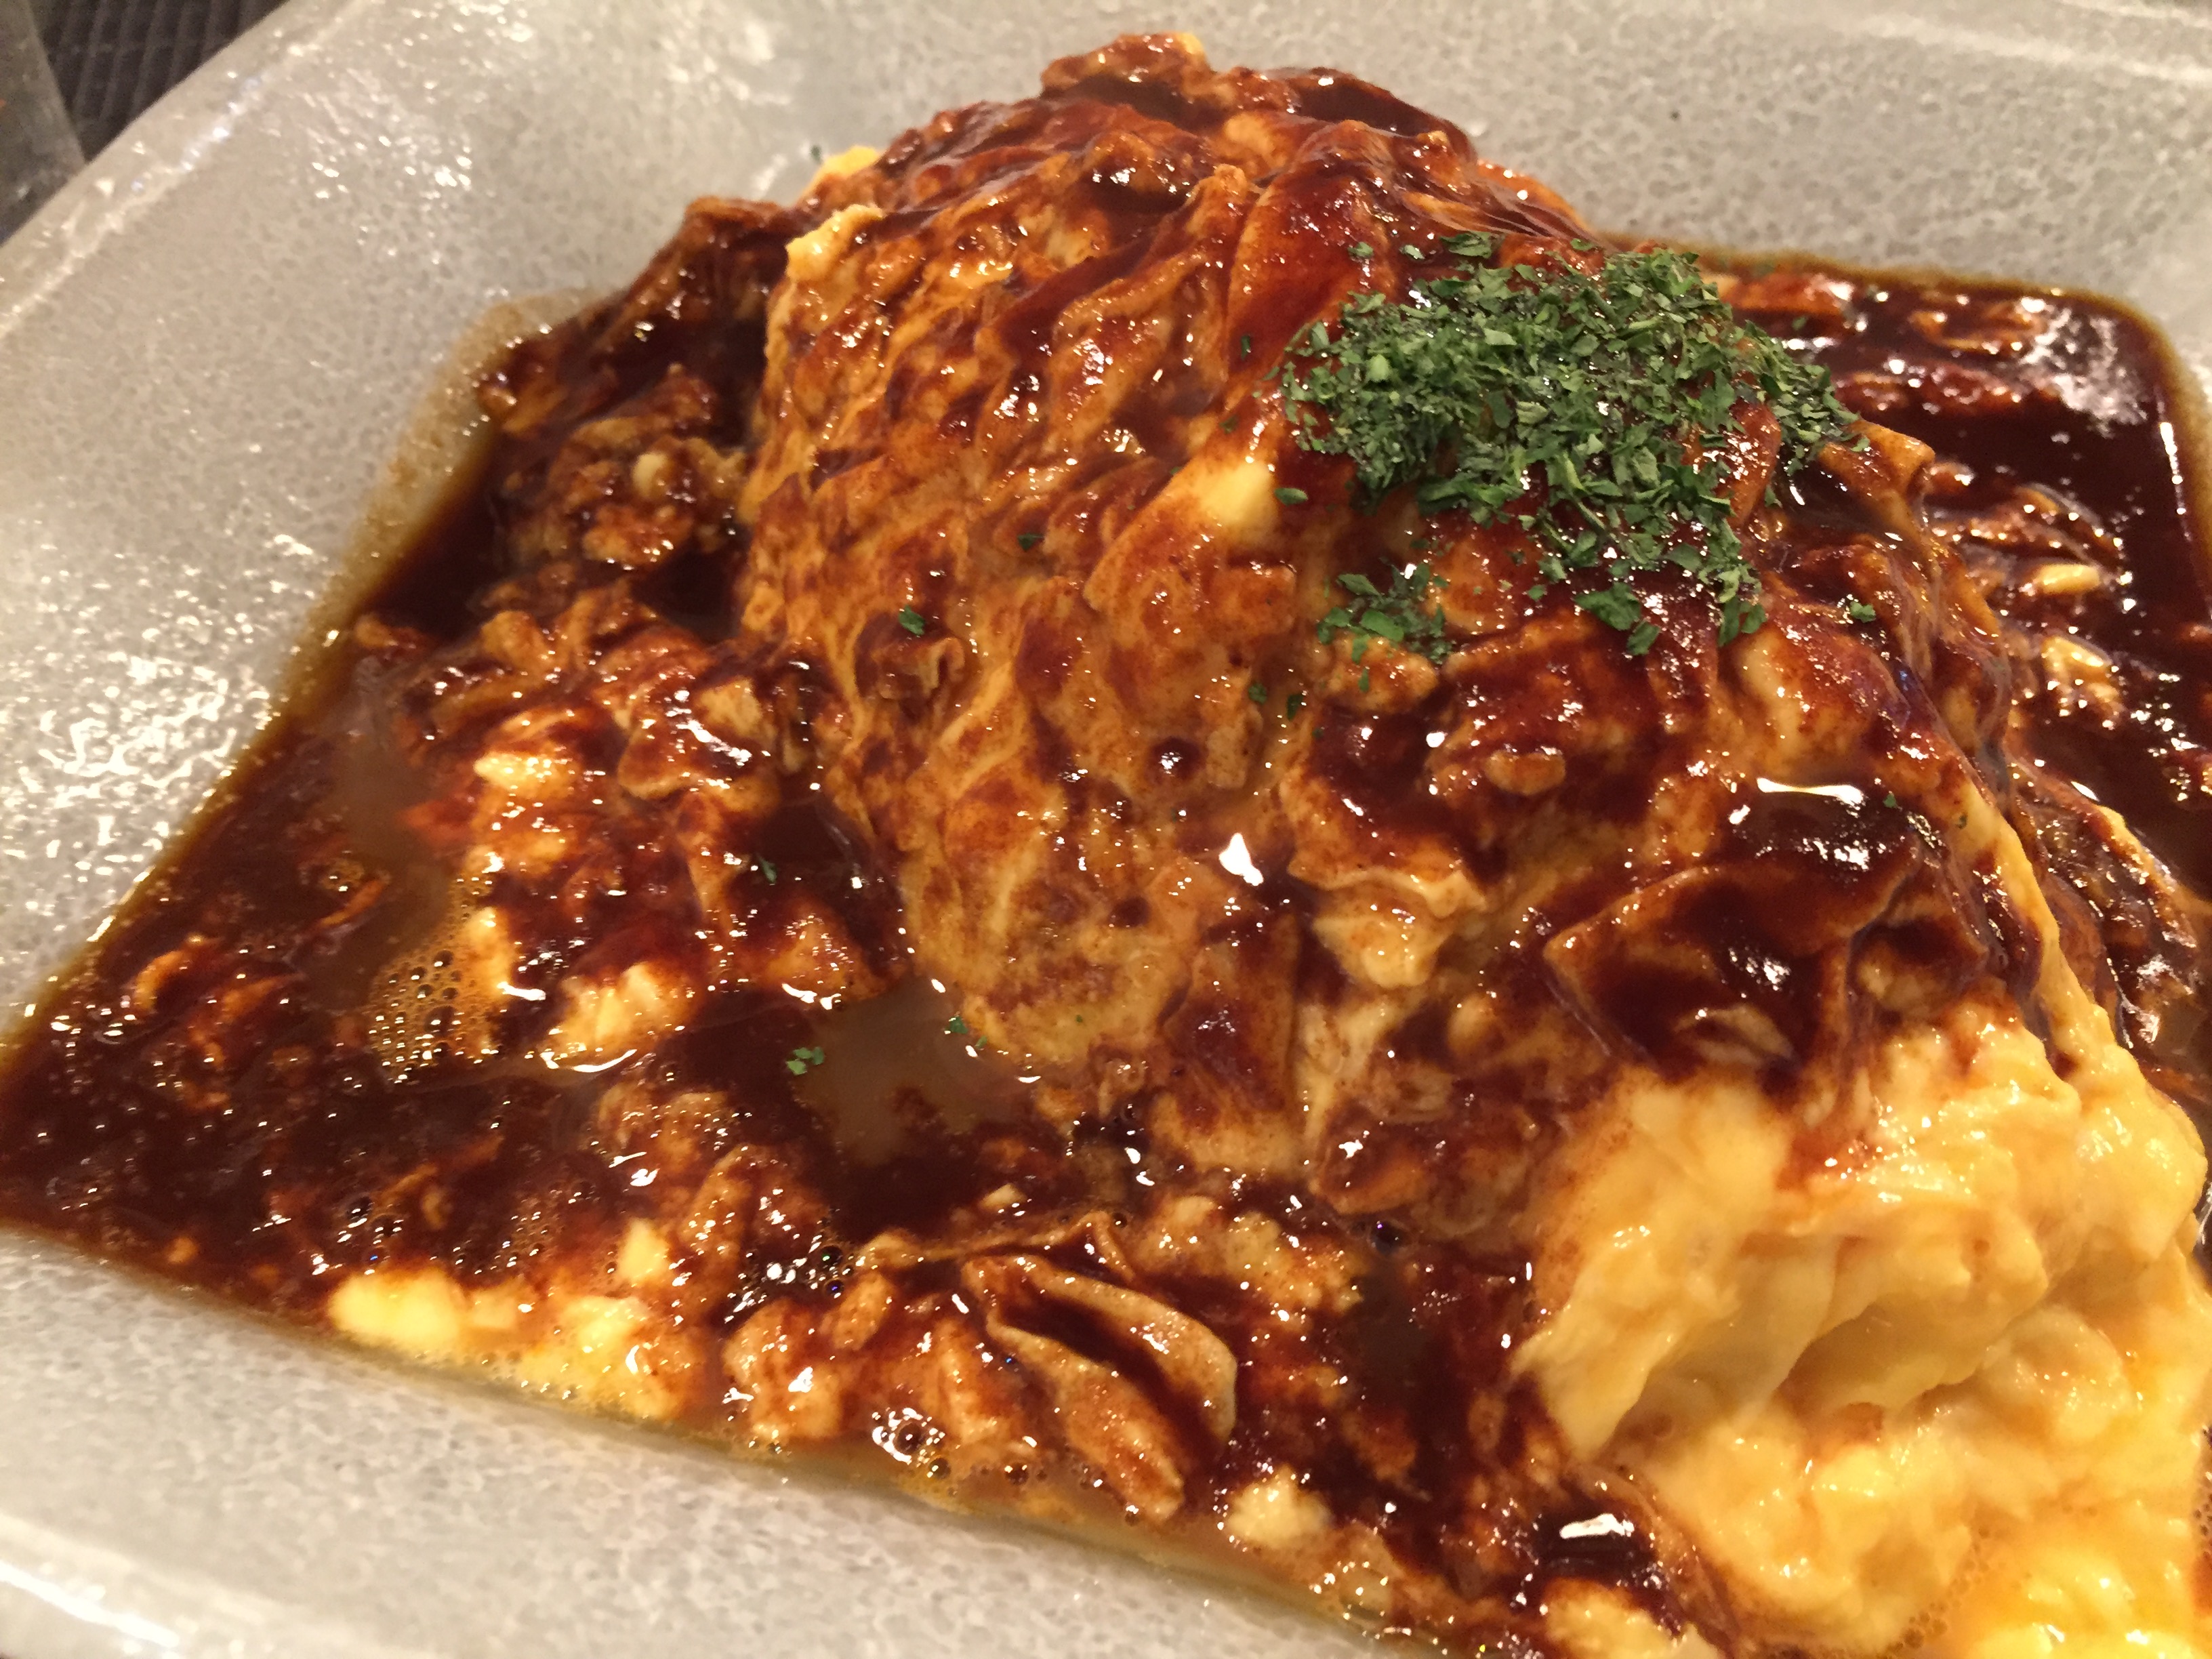 KICHI KICHI Omu Rice 洋食屋 キチキチ: The Best Omurice in Kyoto! (Kichi2 Kyoto)